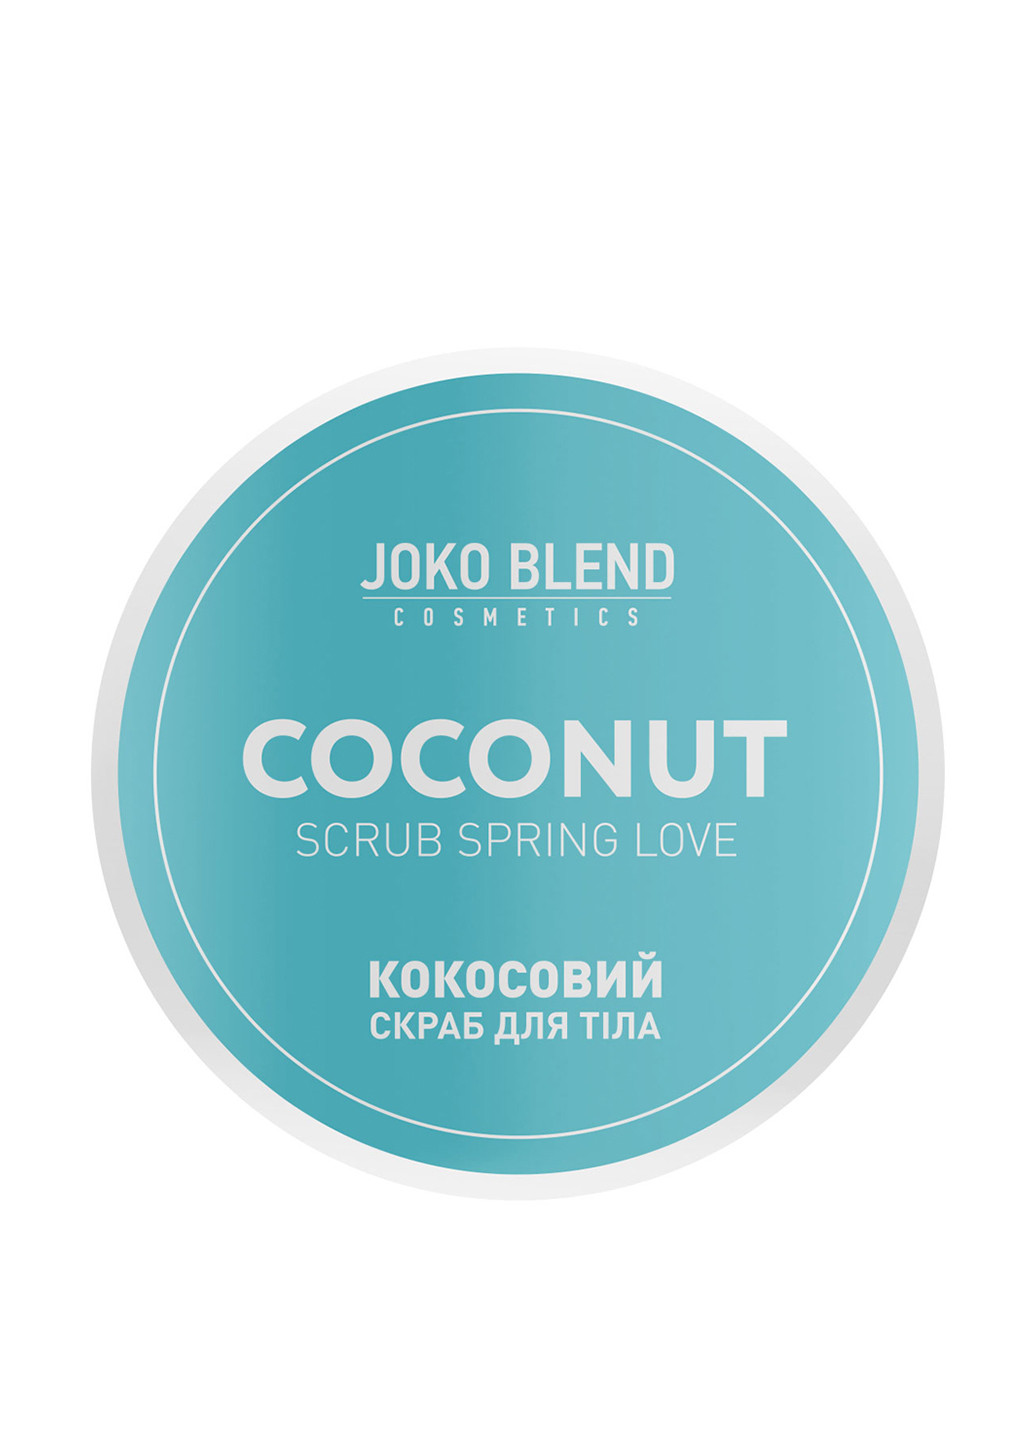 Скраб кокосовый для тела Spring Love, 200 г Joko Blend Cosmetics